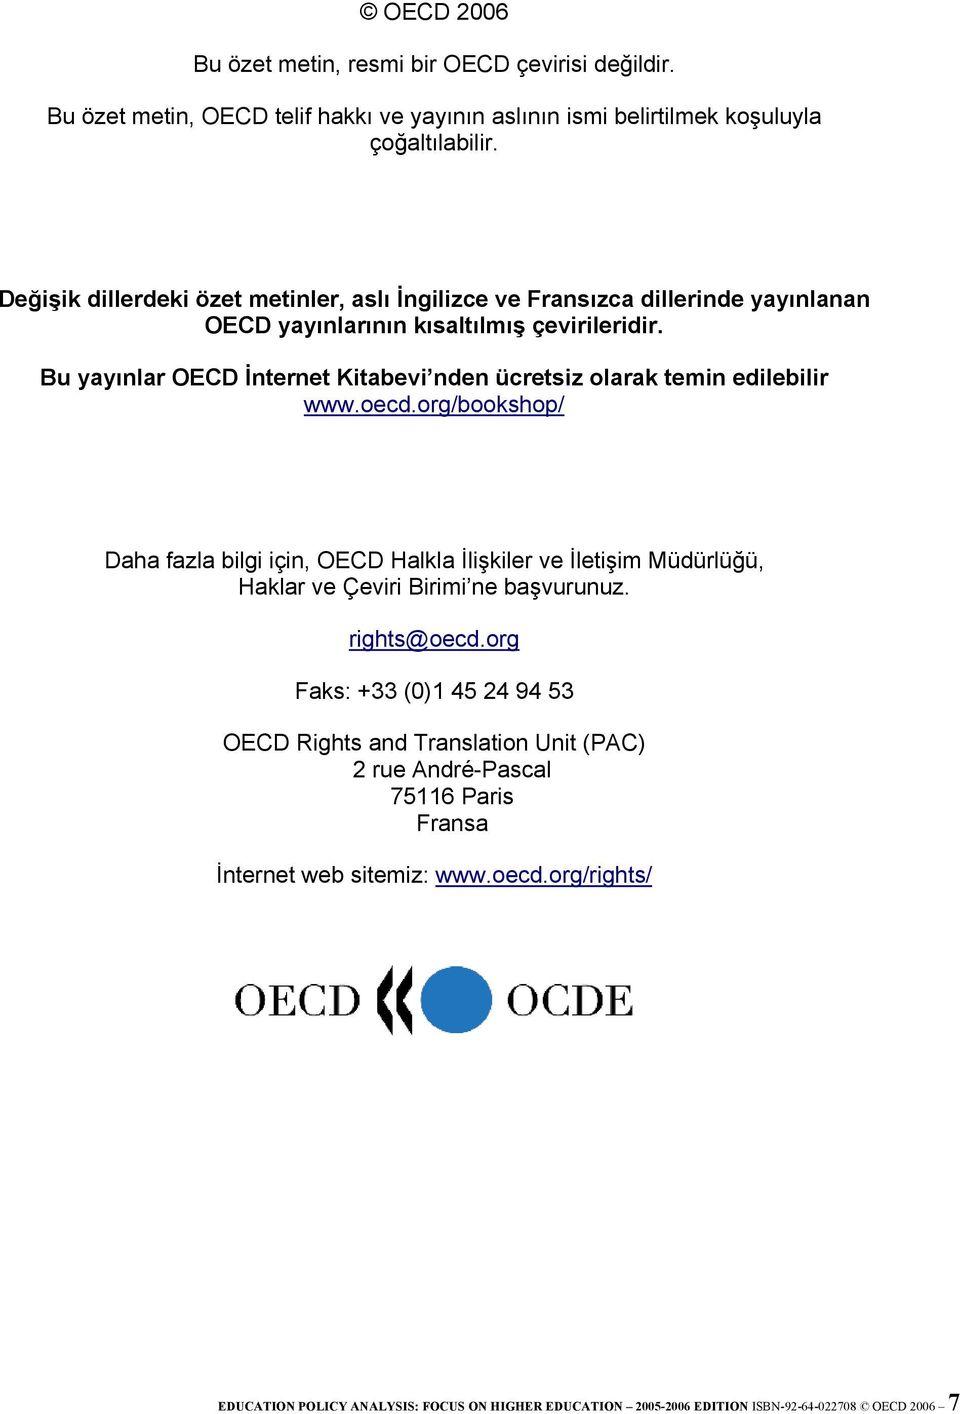 Bu yayınlar OECD İnternet Kitabevi nden ücretsiz olarak temin edilebilir www.oecd.